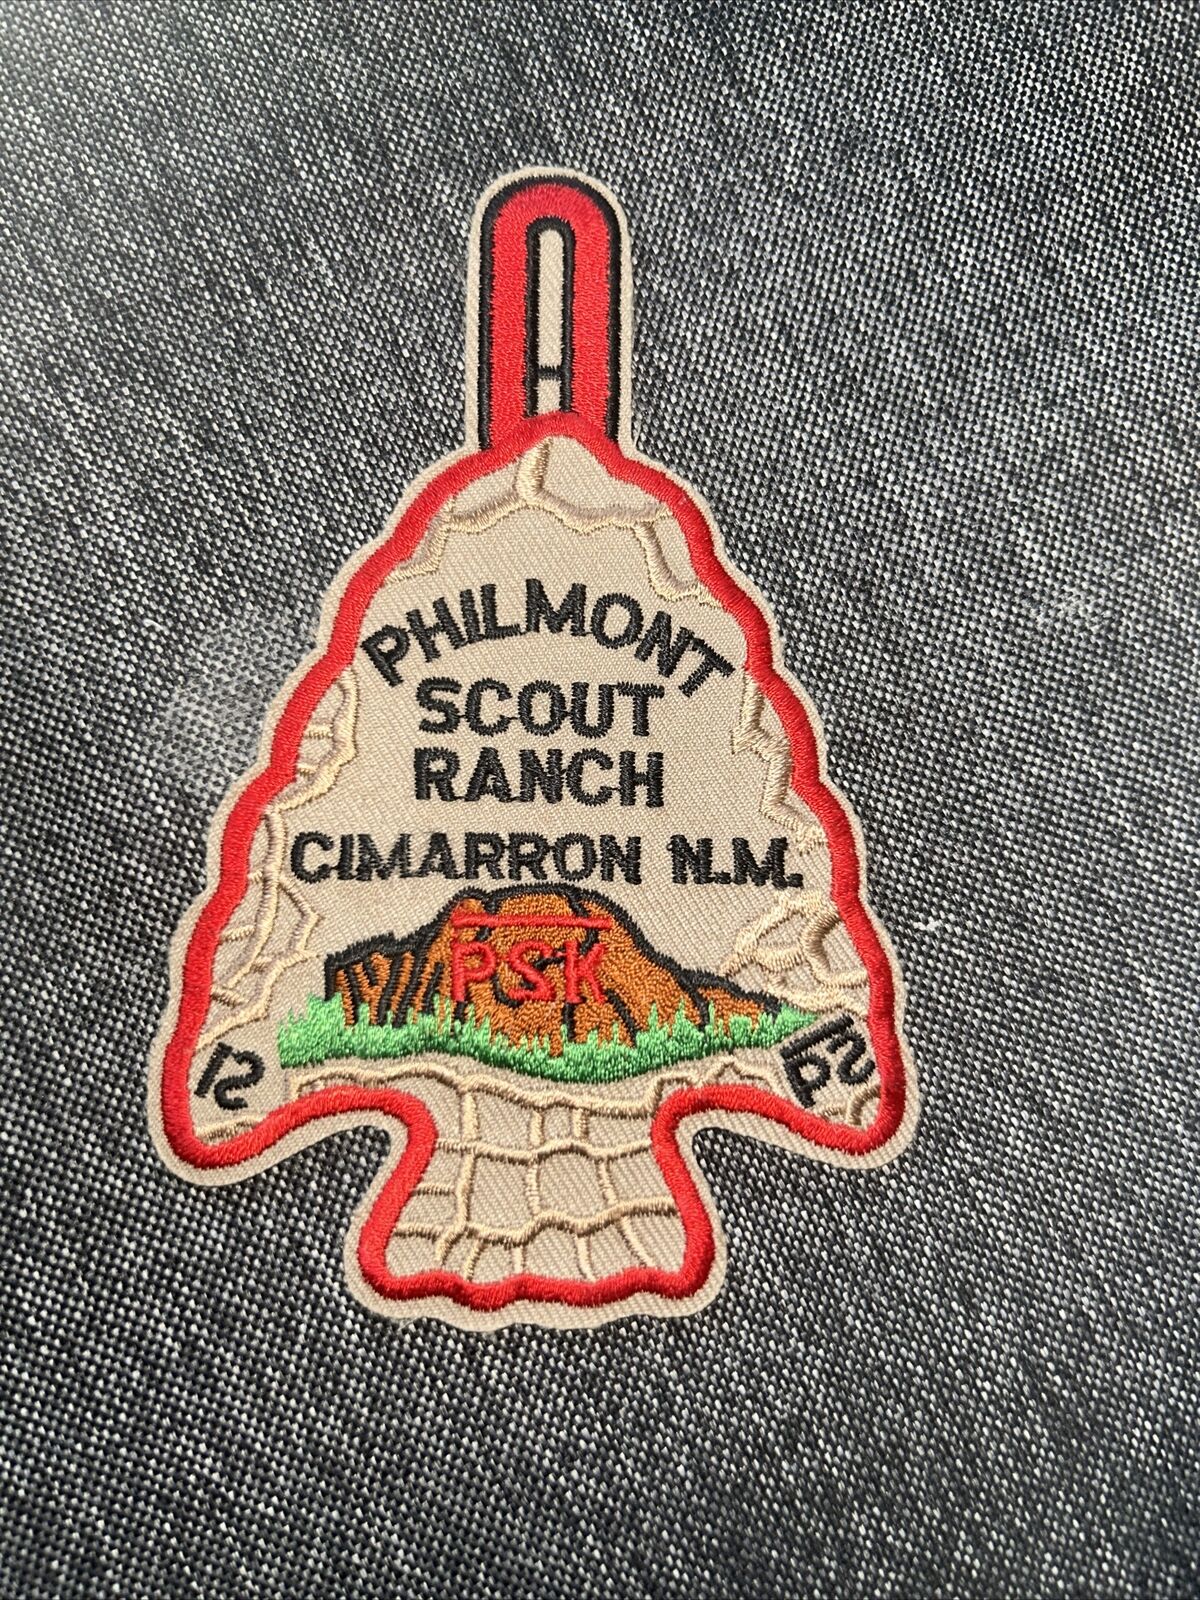 C/E 2000 P2K Boy Scout Philmont Scout Ranch Arrowhead Patch Red Border